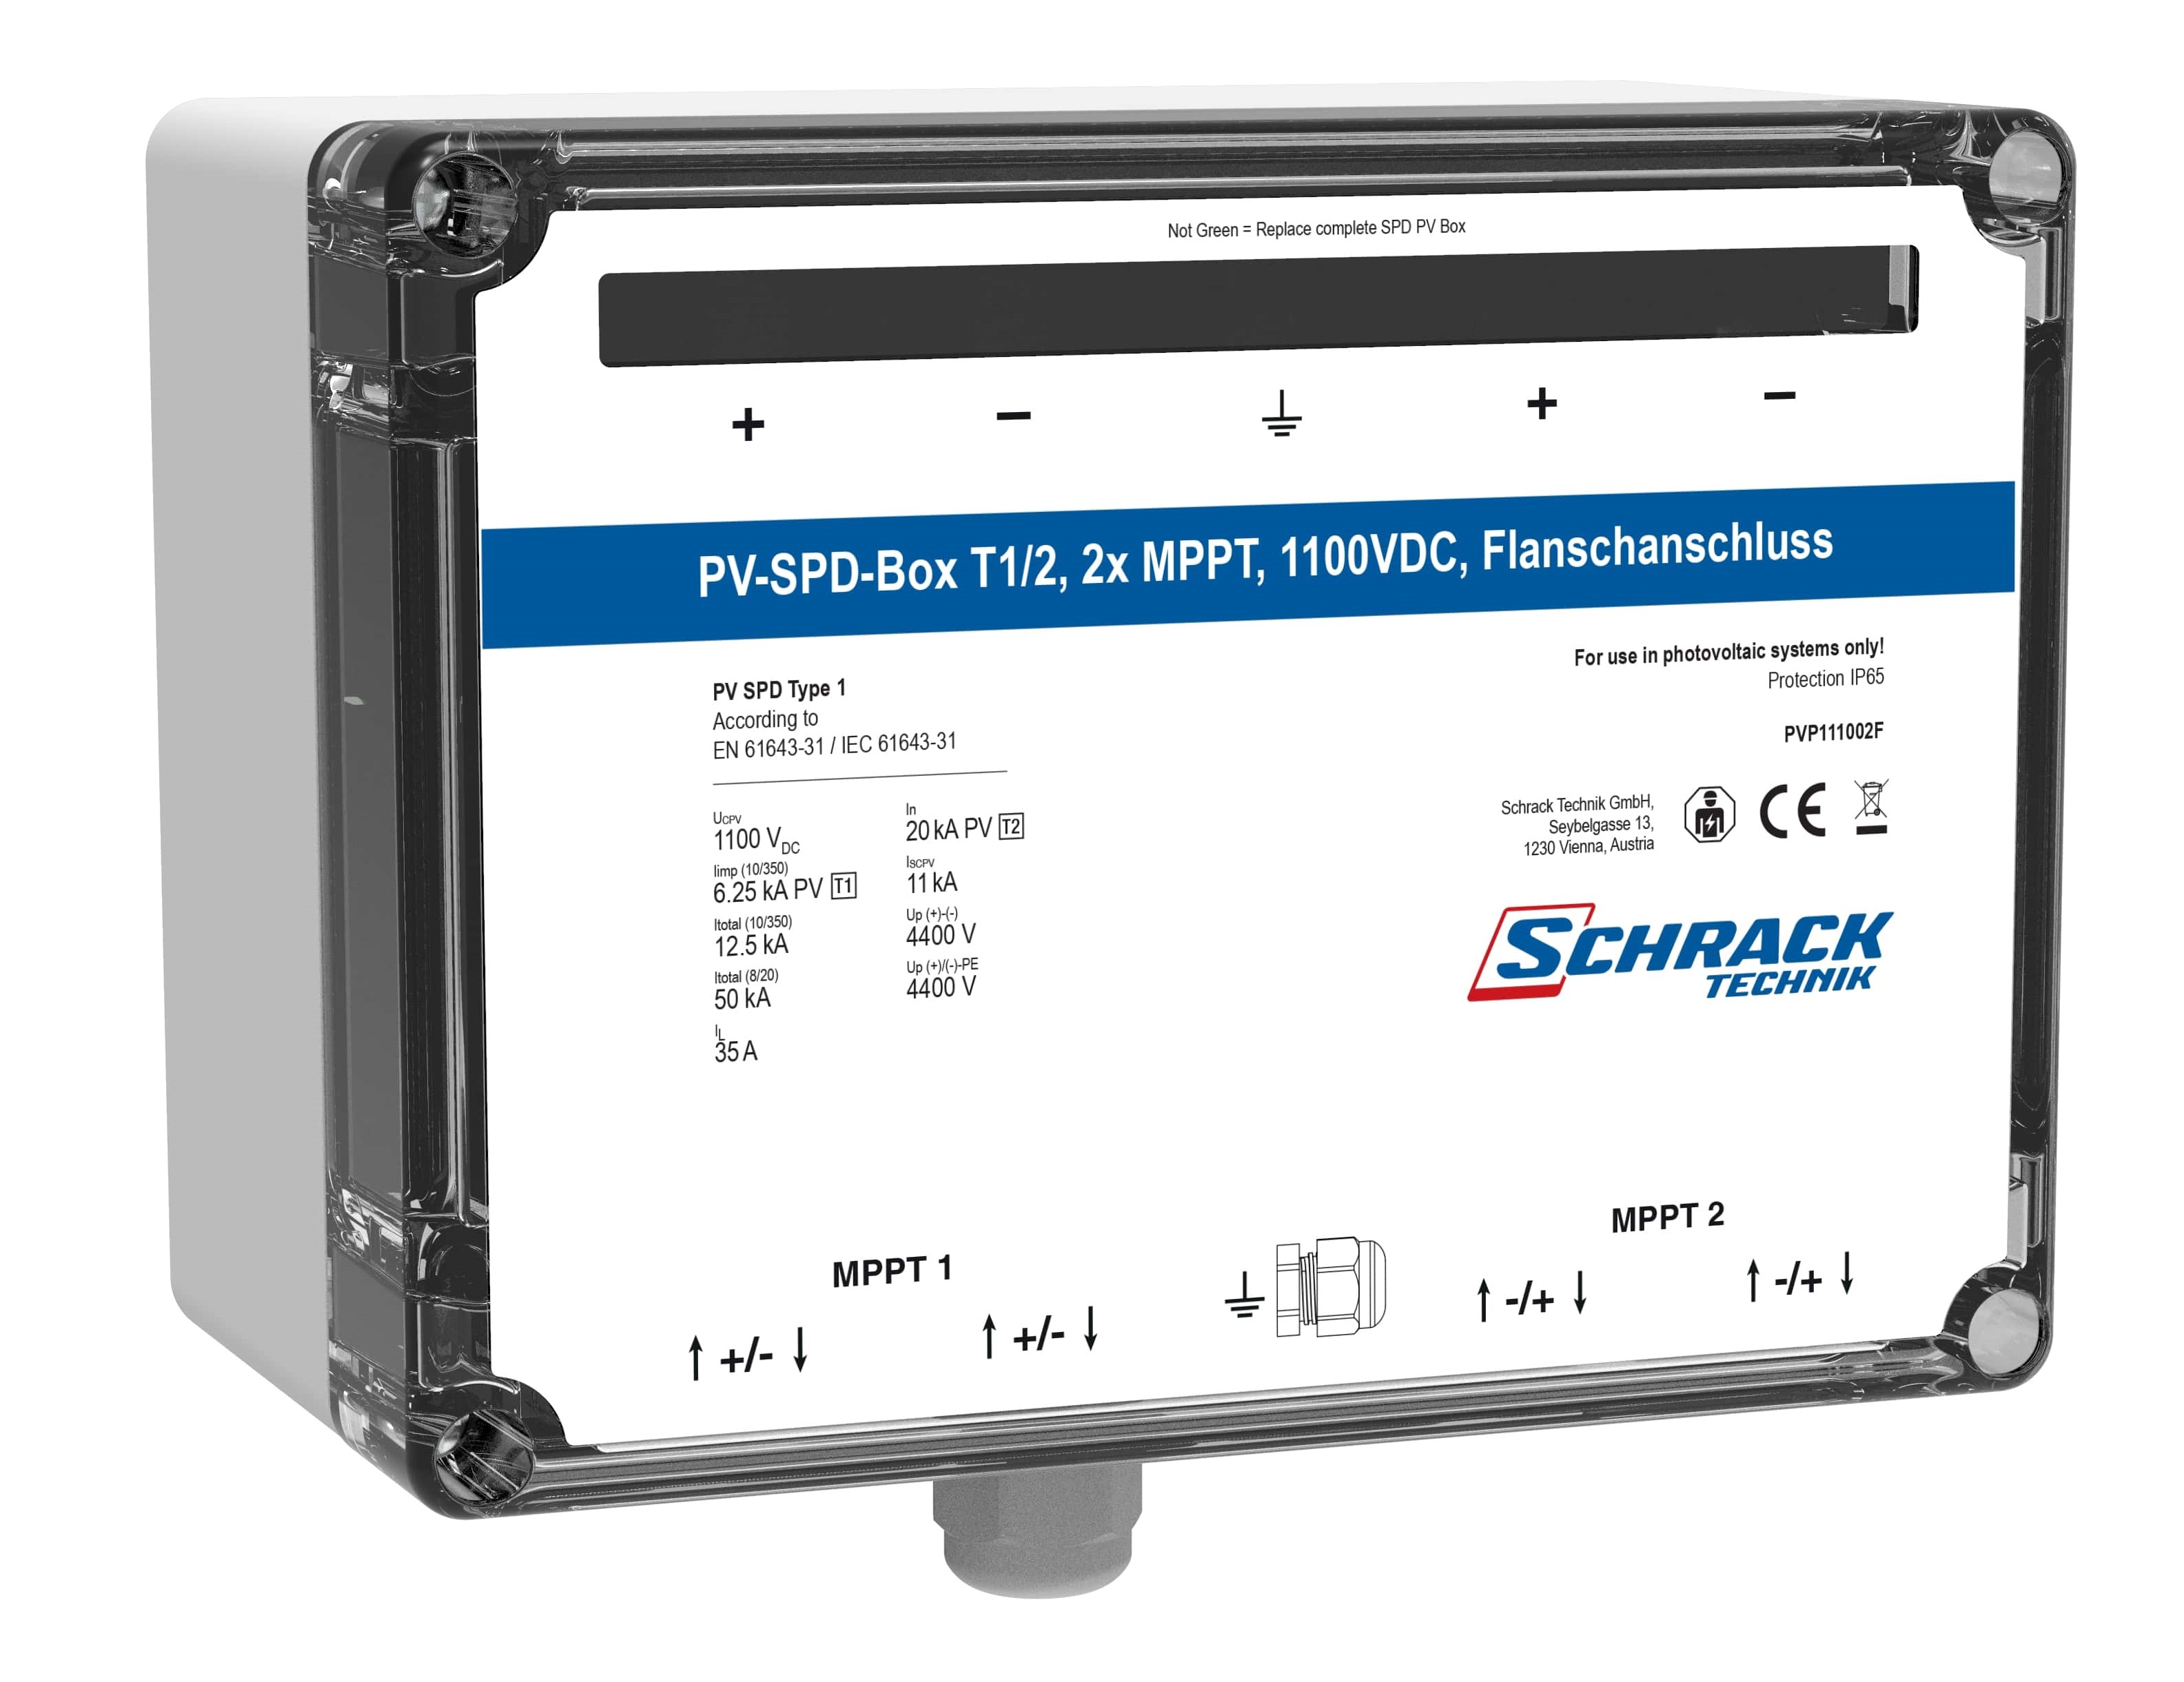 PV-SPD-Box T1/2, 2x MPPT, 1100VDC, Flanschanschluss